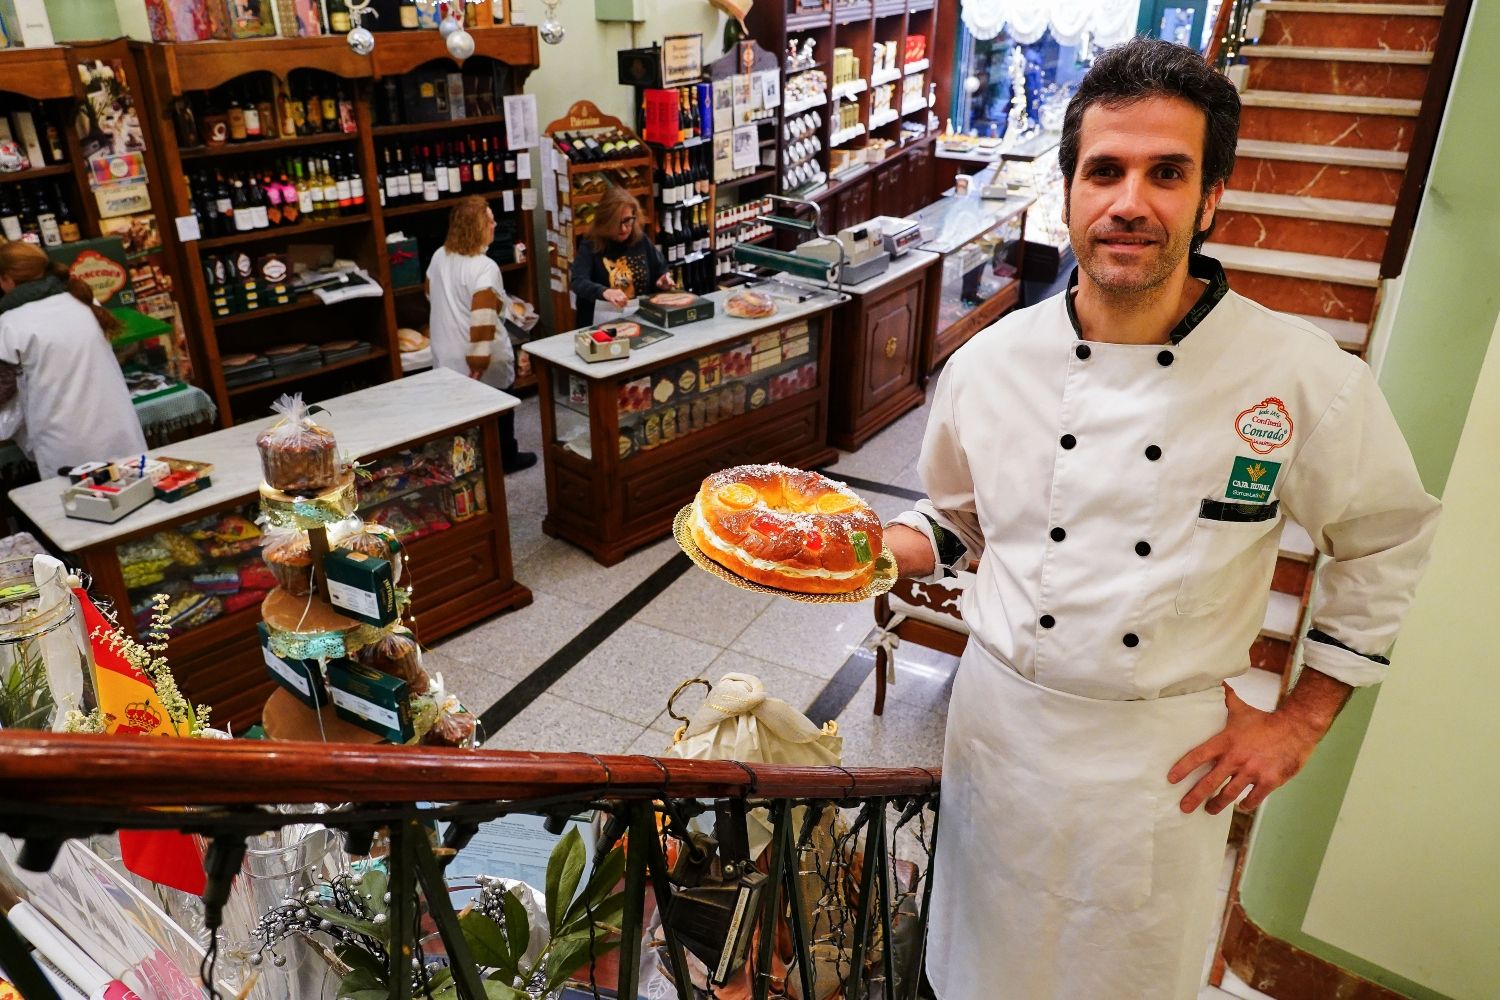  La Confitería Conrado de La Bañeza, sortea 10.000 euros por la compra de su tradicional Roscón de Reyes